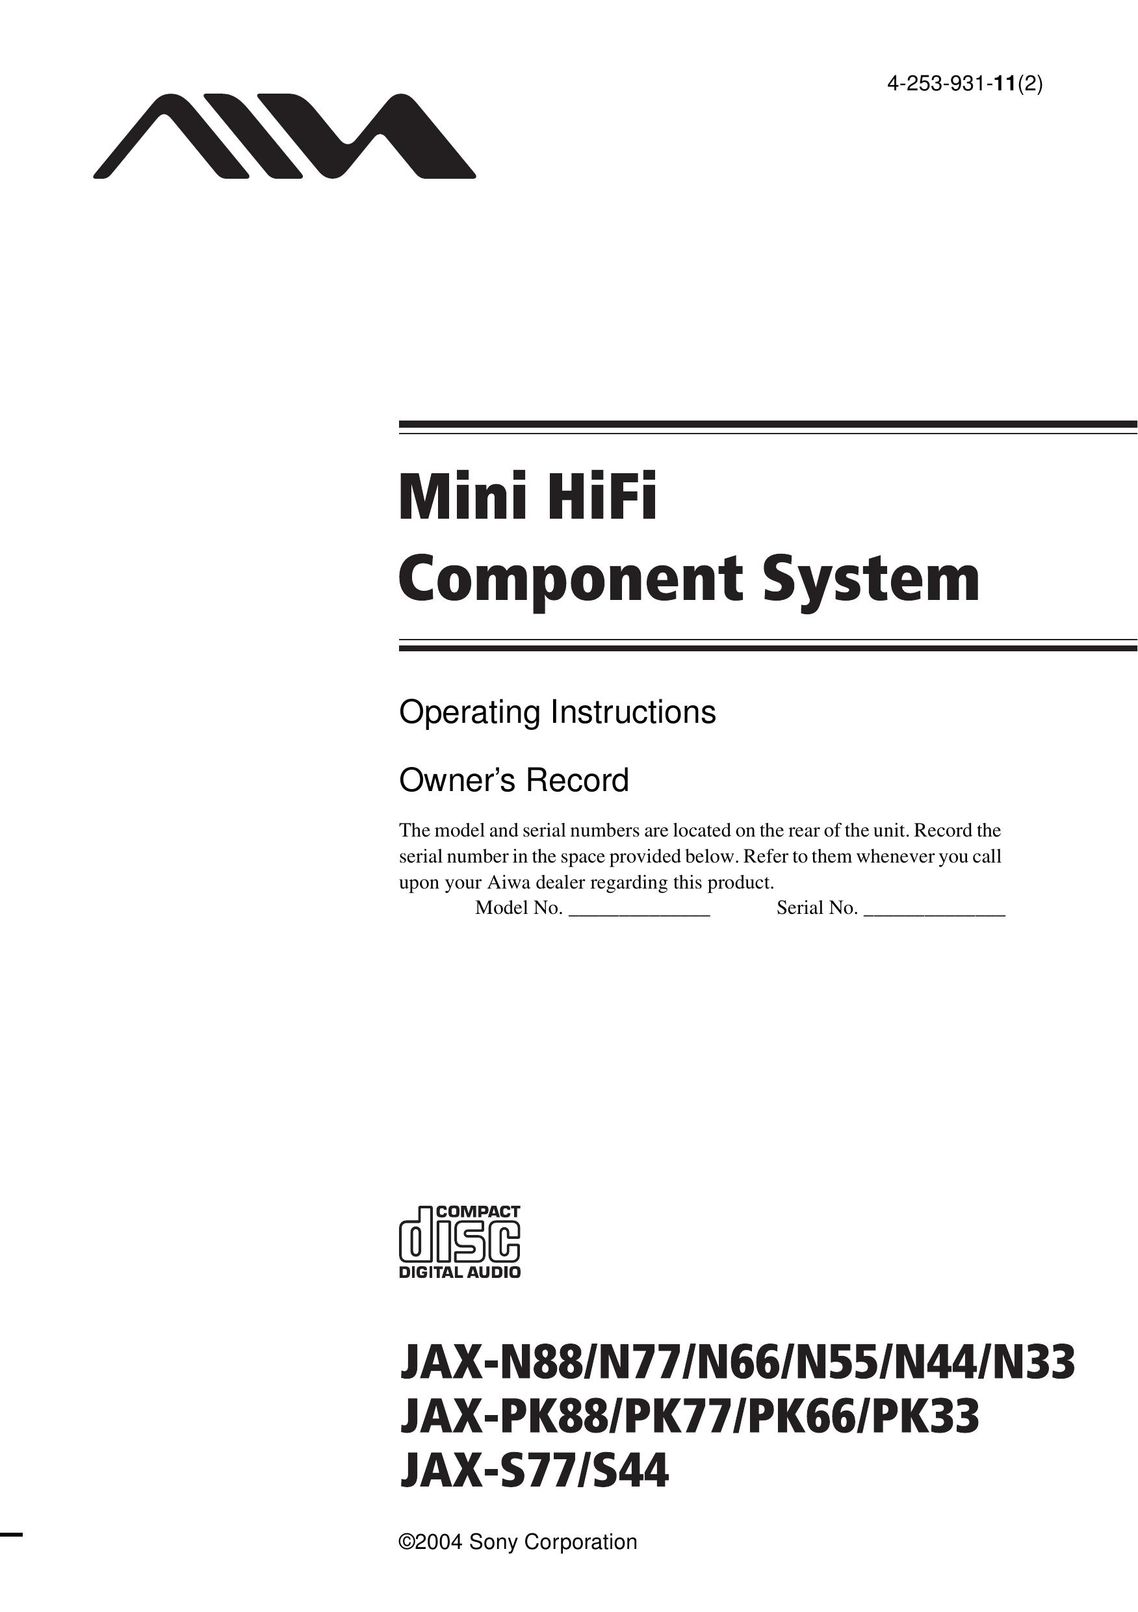 Aiwa JAX-S44 Stereo System User Manual